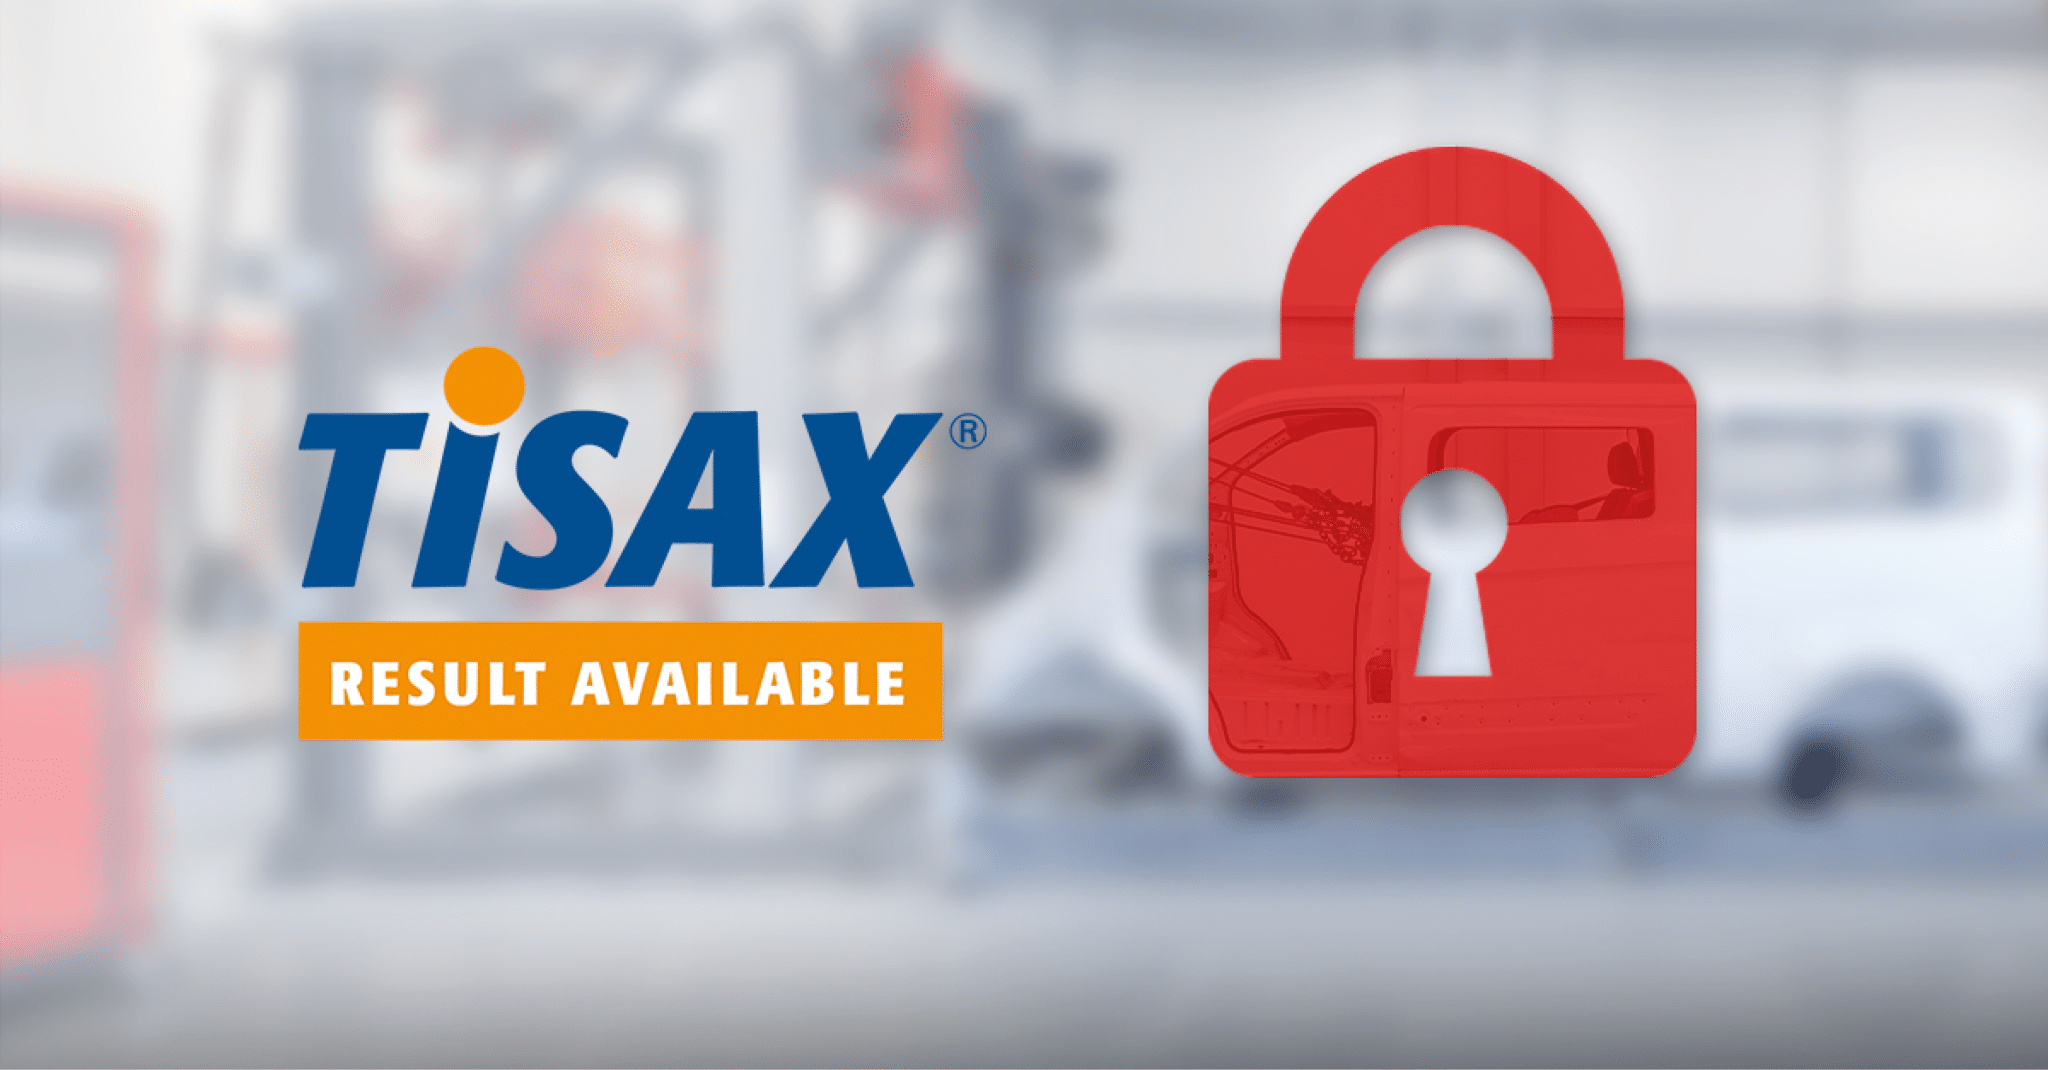 Snoeks achieves TISAX label